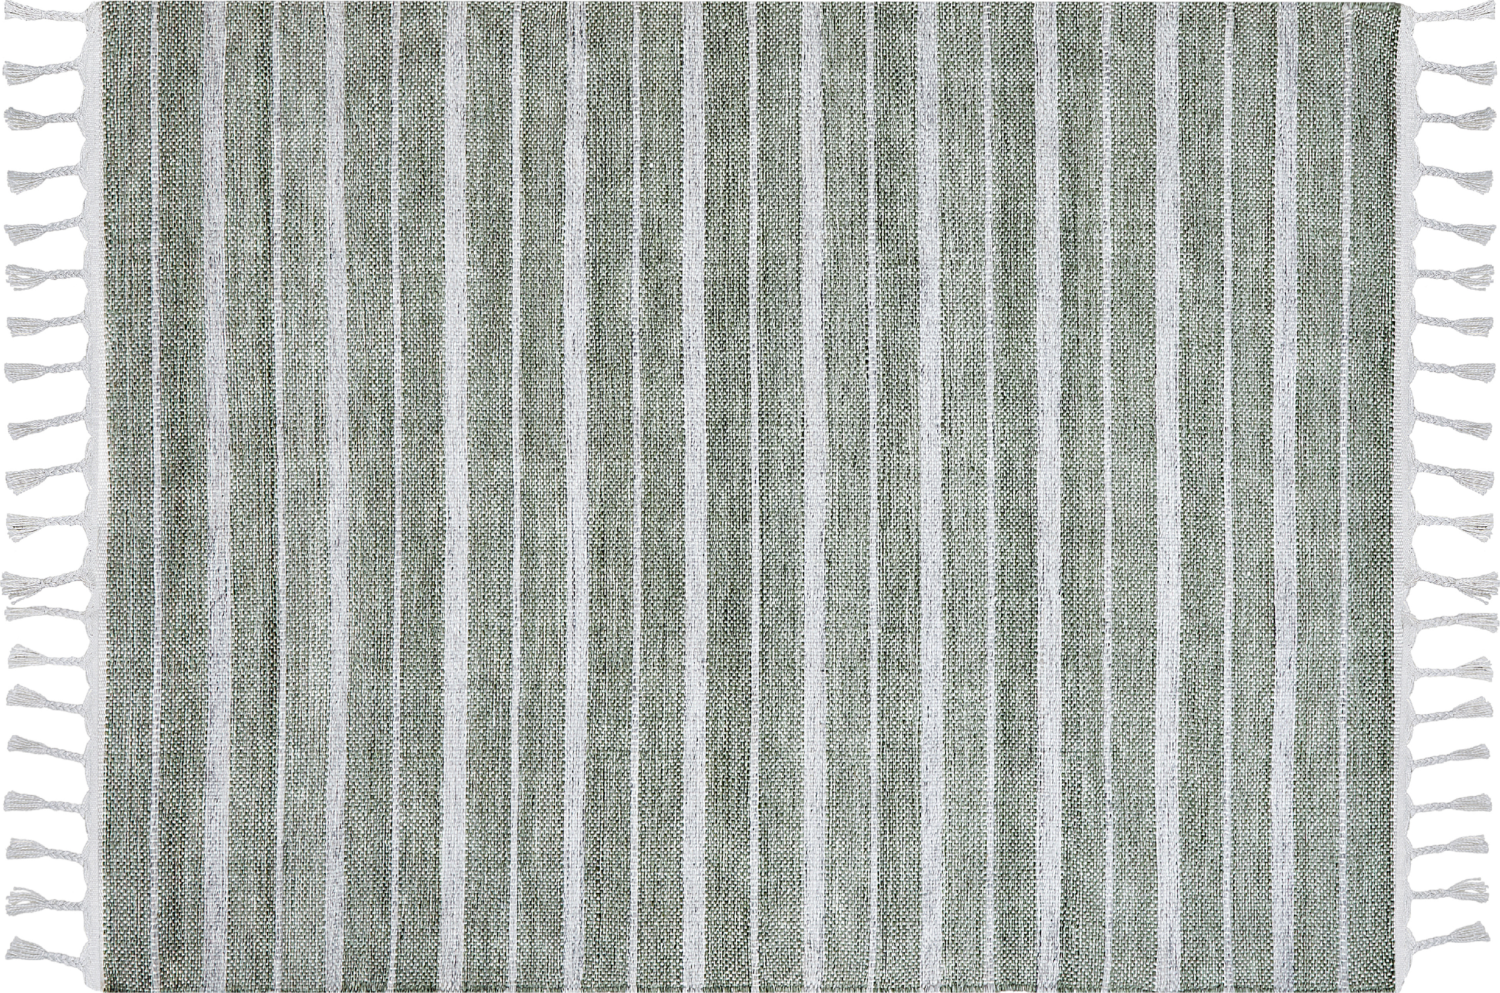 Outdoor Teppich dunkelgrün weiß 140 x 200 cm Streifenmuster Kurzflor BADEMLI Bild 1